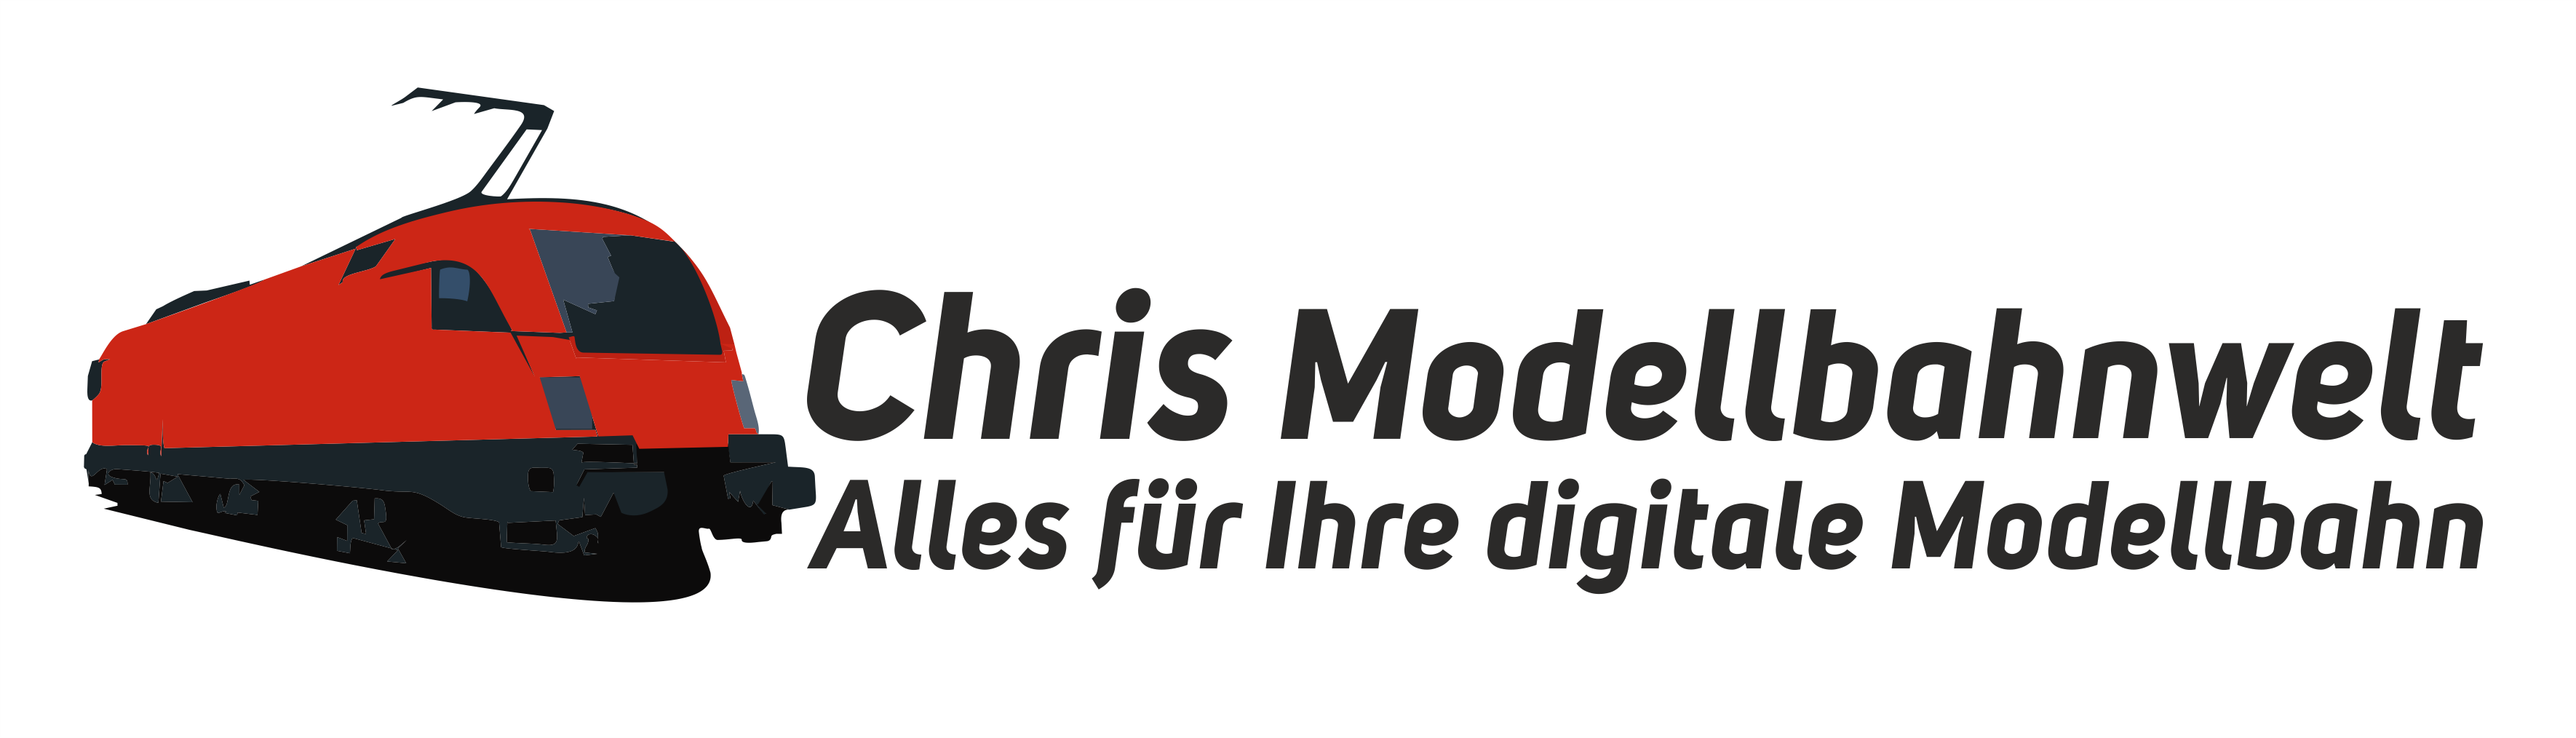 Chris Modellbahnwelt